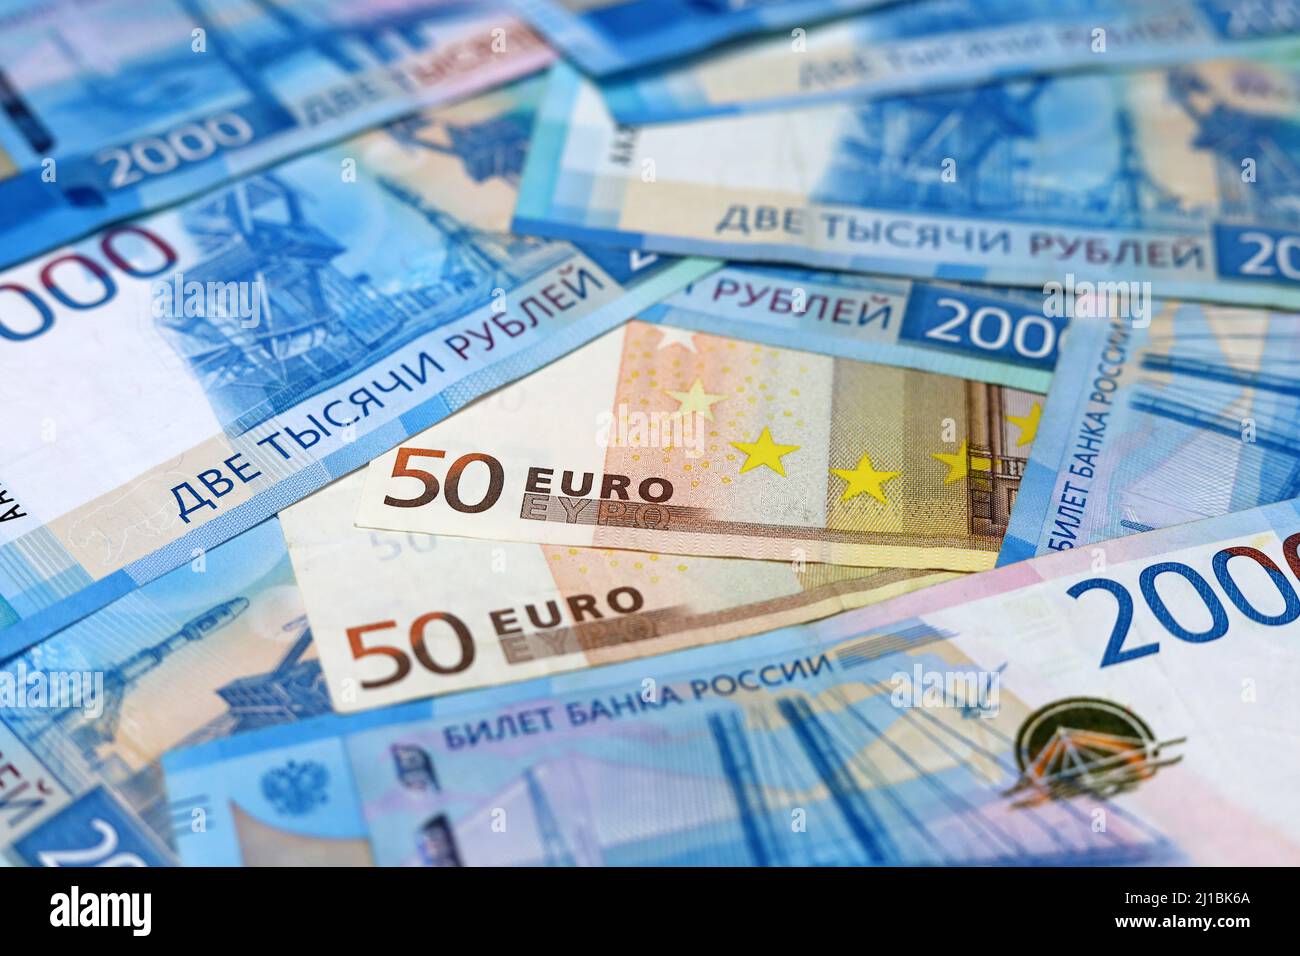 Billets en euros entourés de roubles russes. Économie de la Russie pendant les sanctions européennes, taux de change Banque D'Images